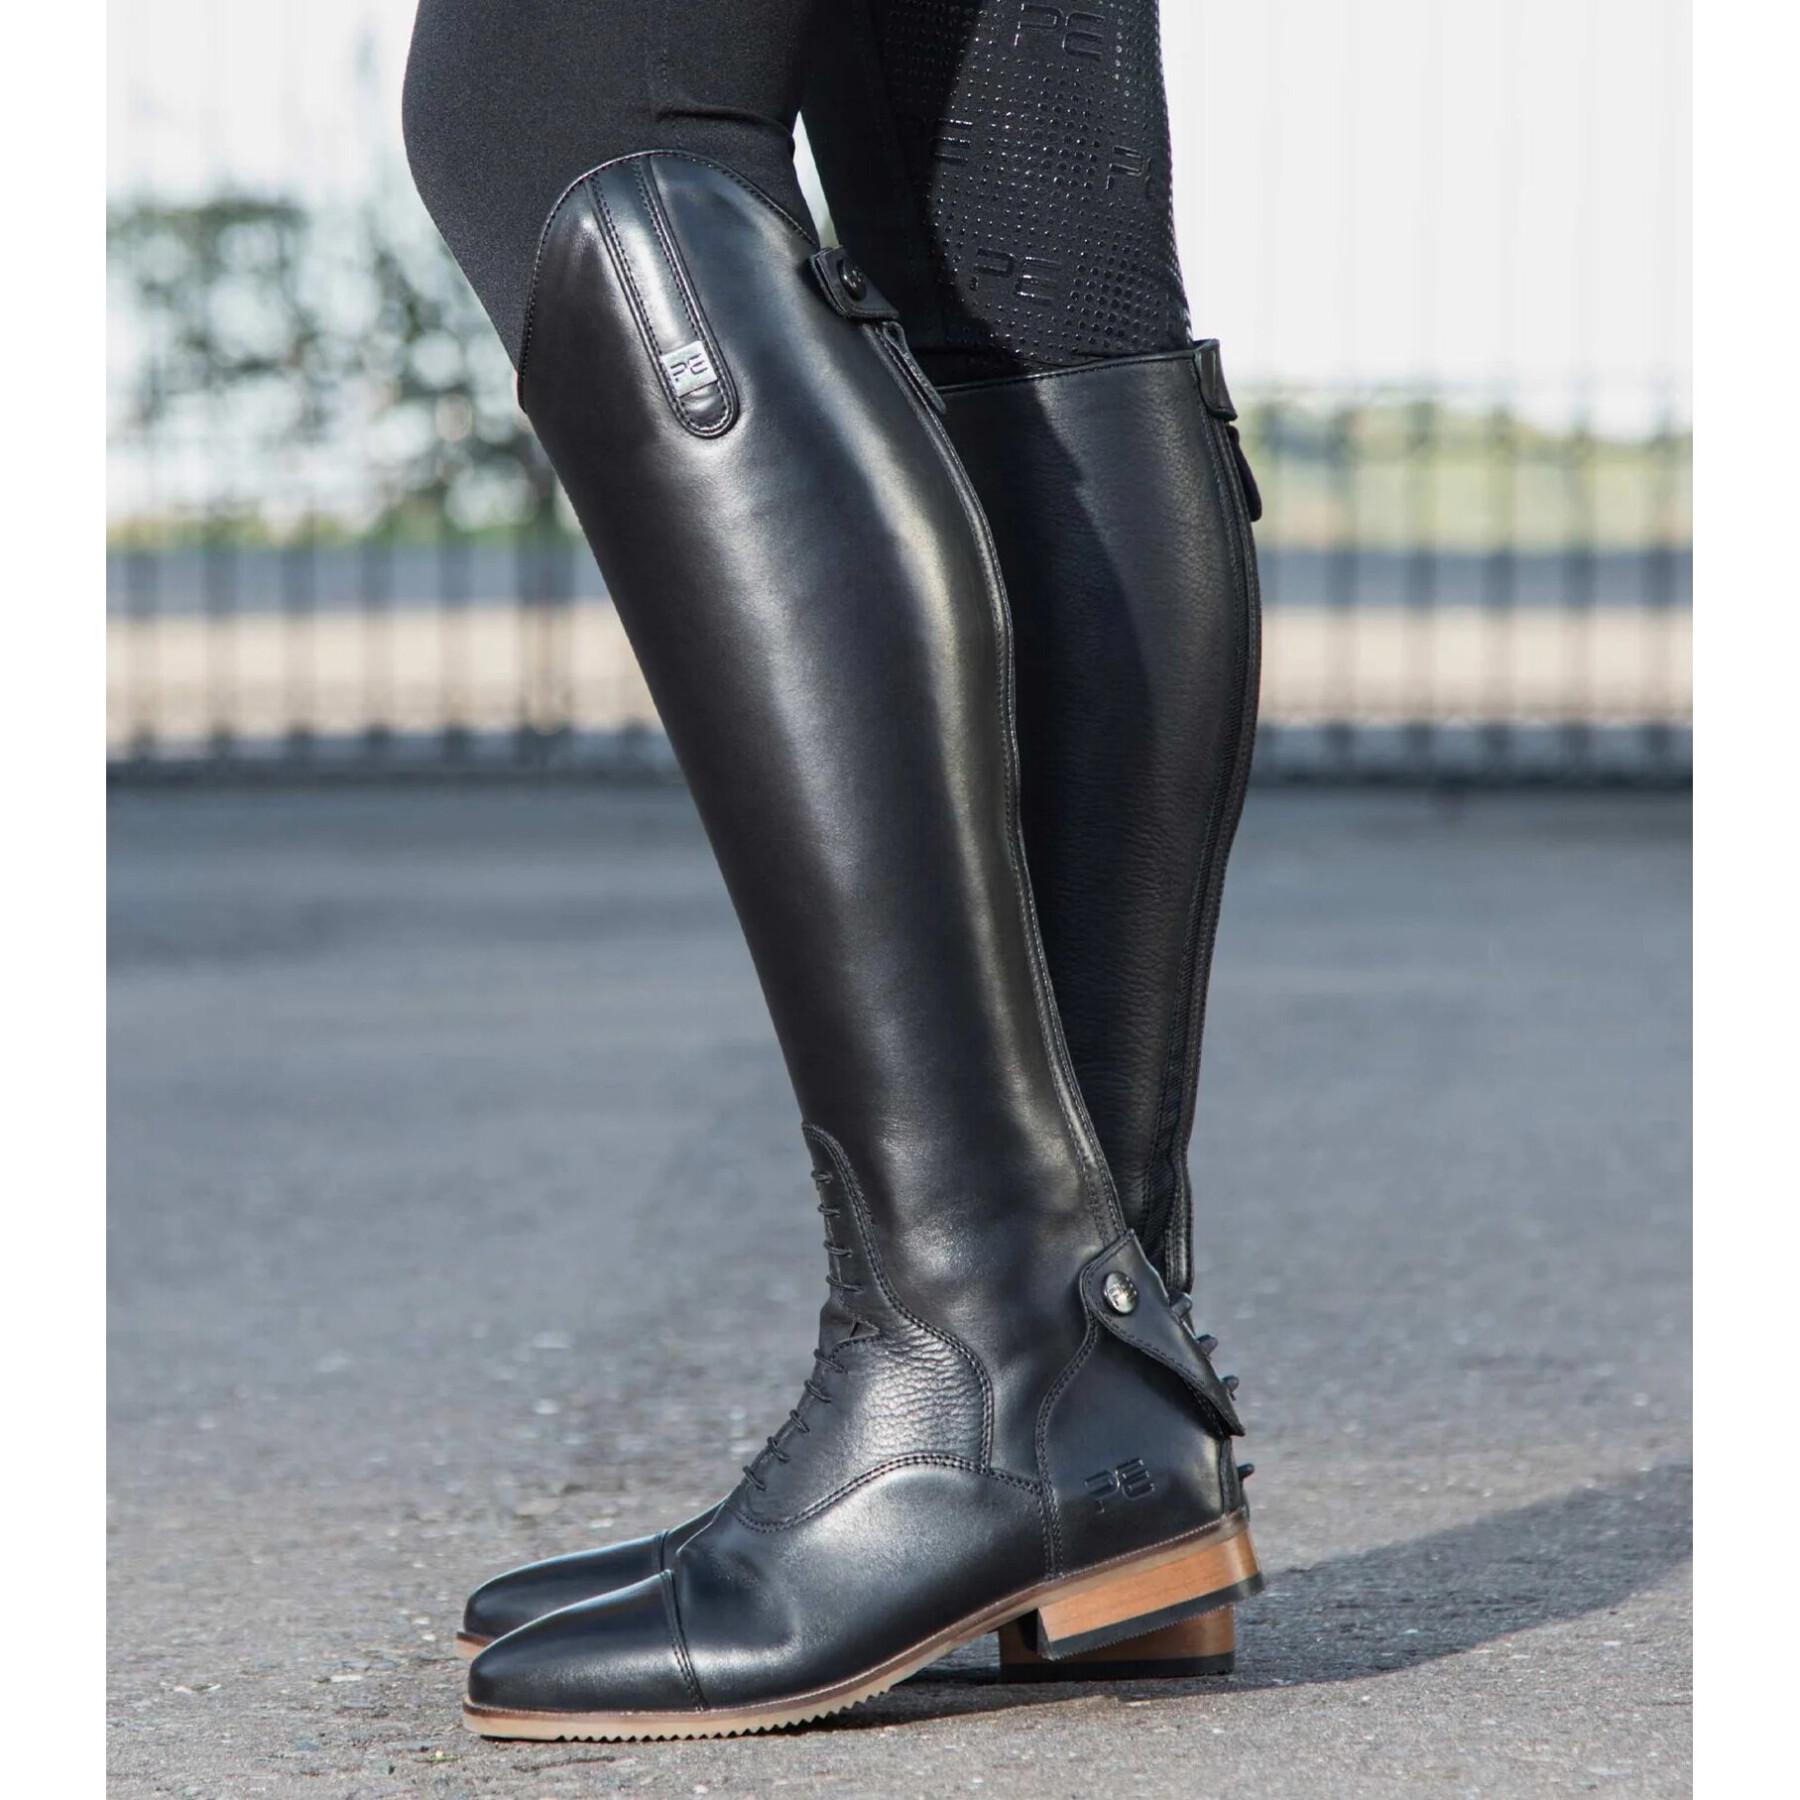 Women's riding boots Premier Equine Bilancio Large